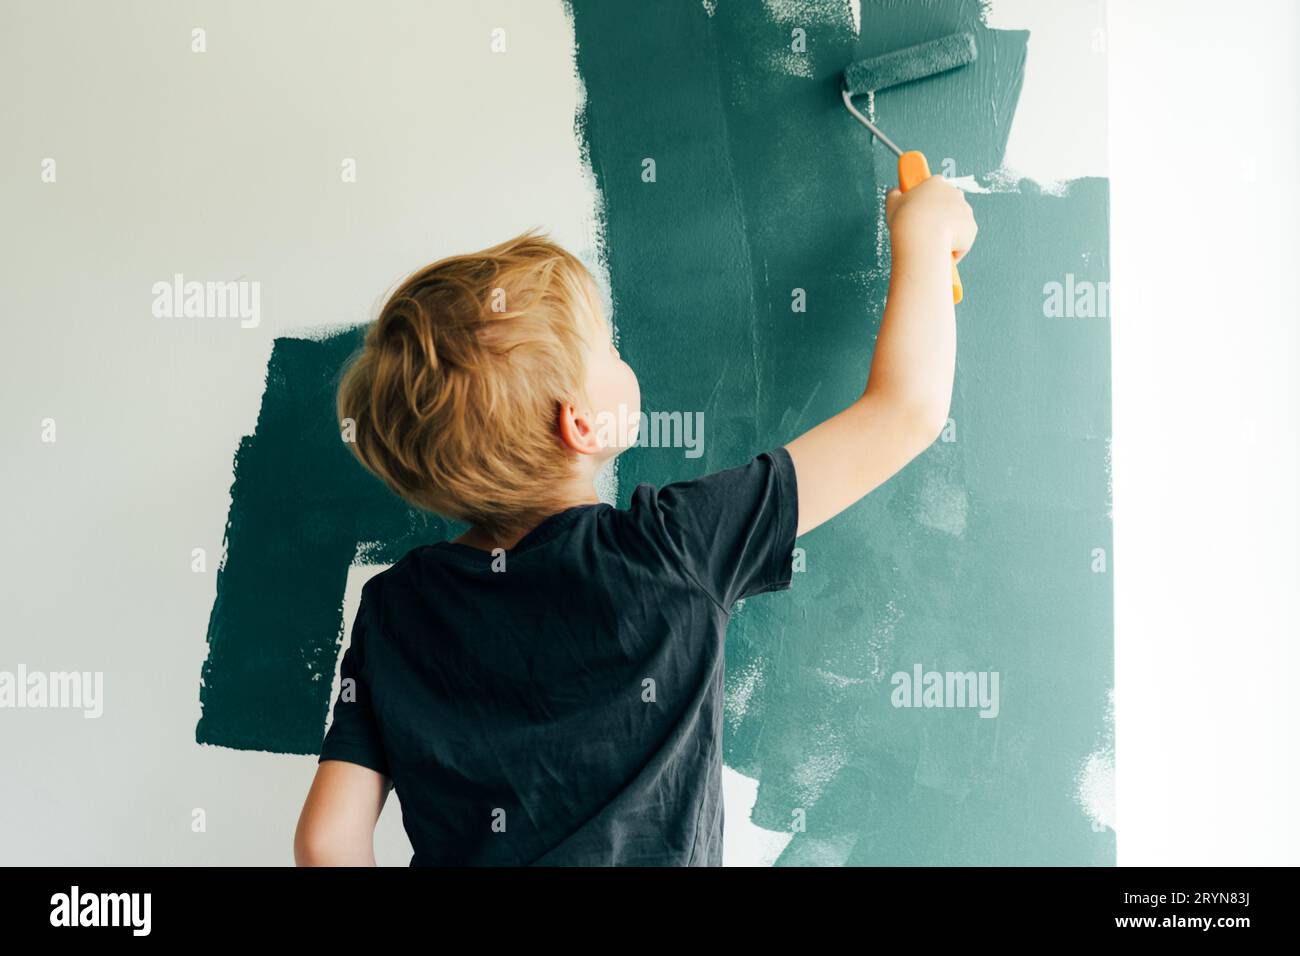 Un garçon peint un mur dans une pièce près de la fenêtre.Mises à jour dans l'appartement.Réparez-vous. Banque D'Images